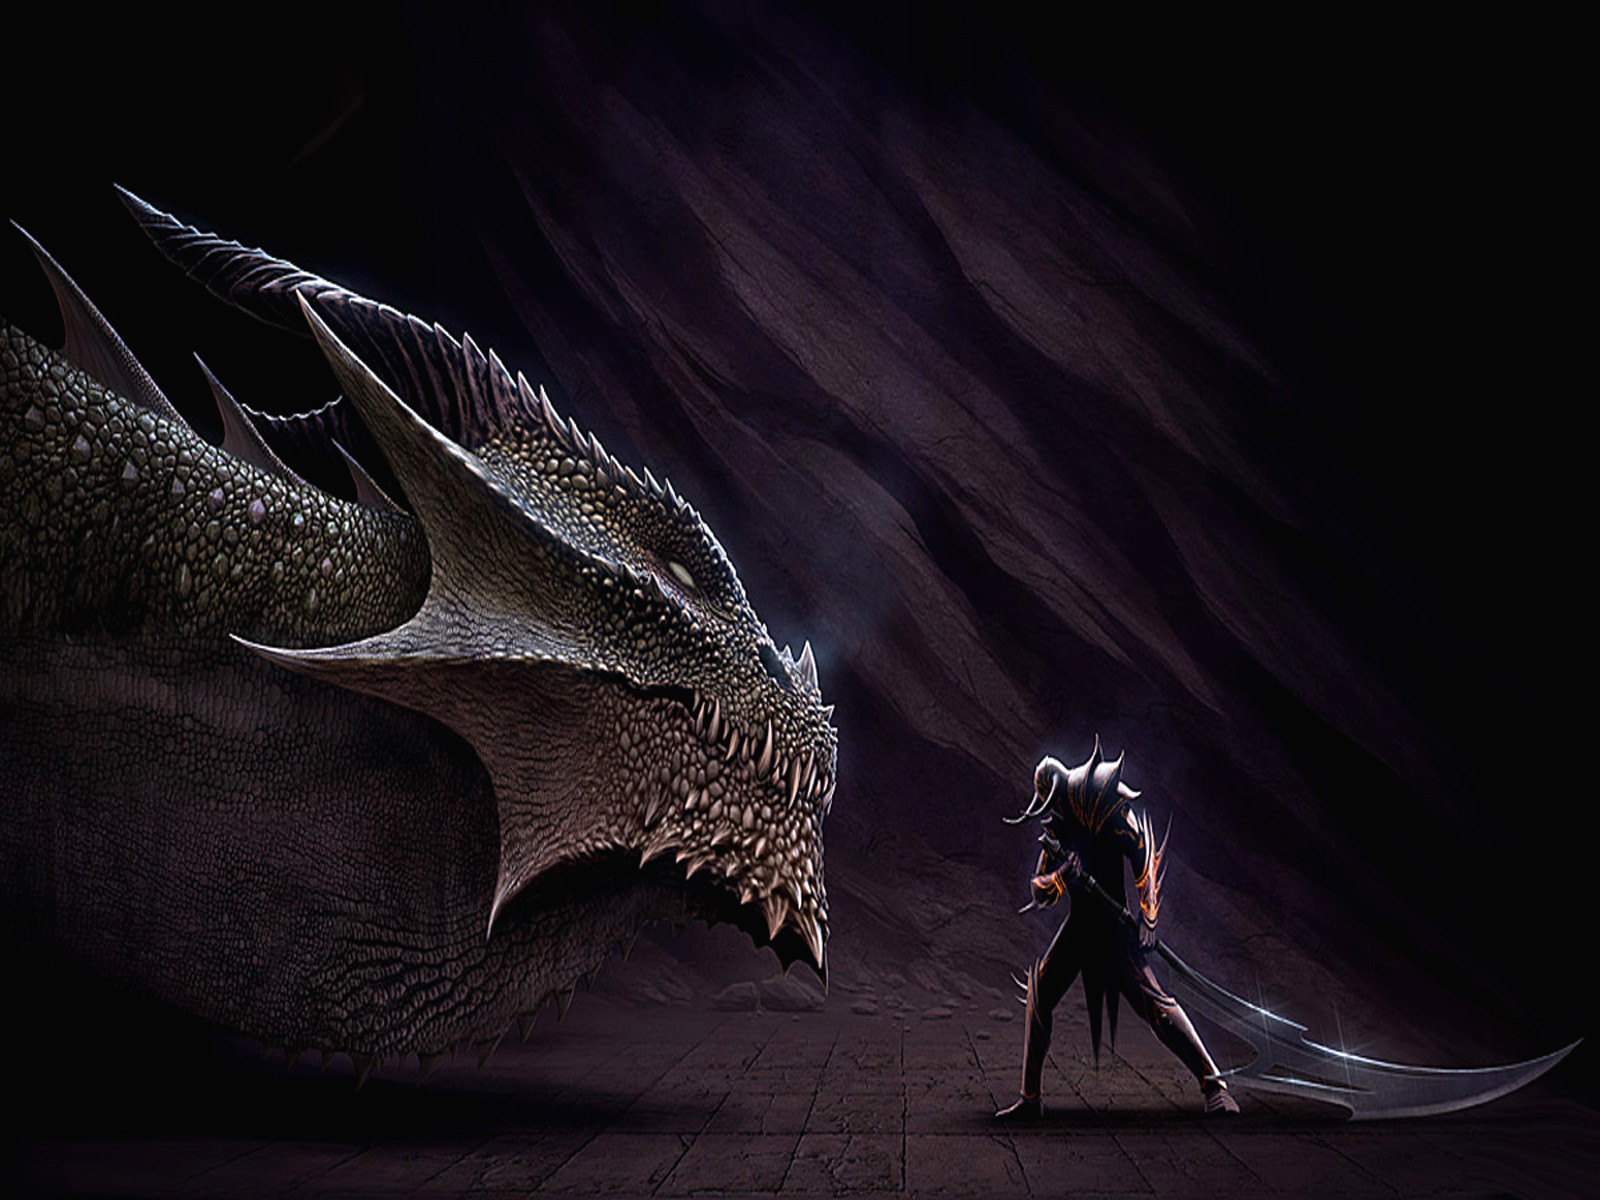 dragones fond d'écran hd,dragon,oeuvre de cg,personnage fictif,ténèbres,créature mythique